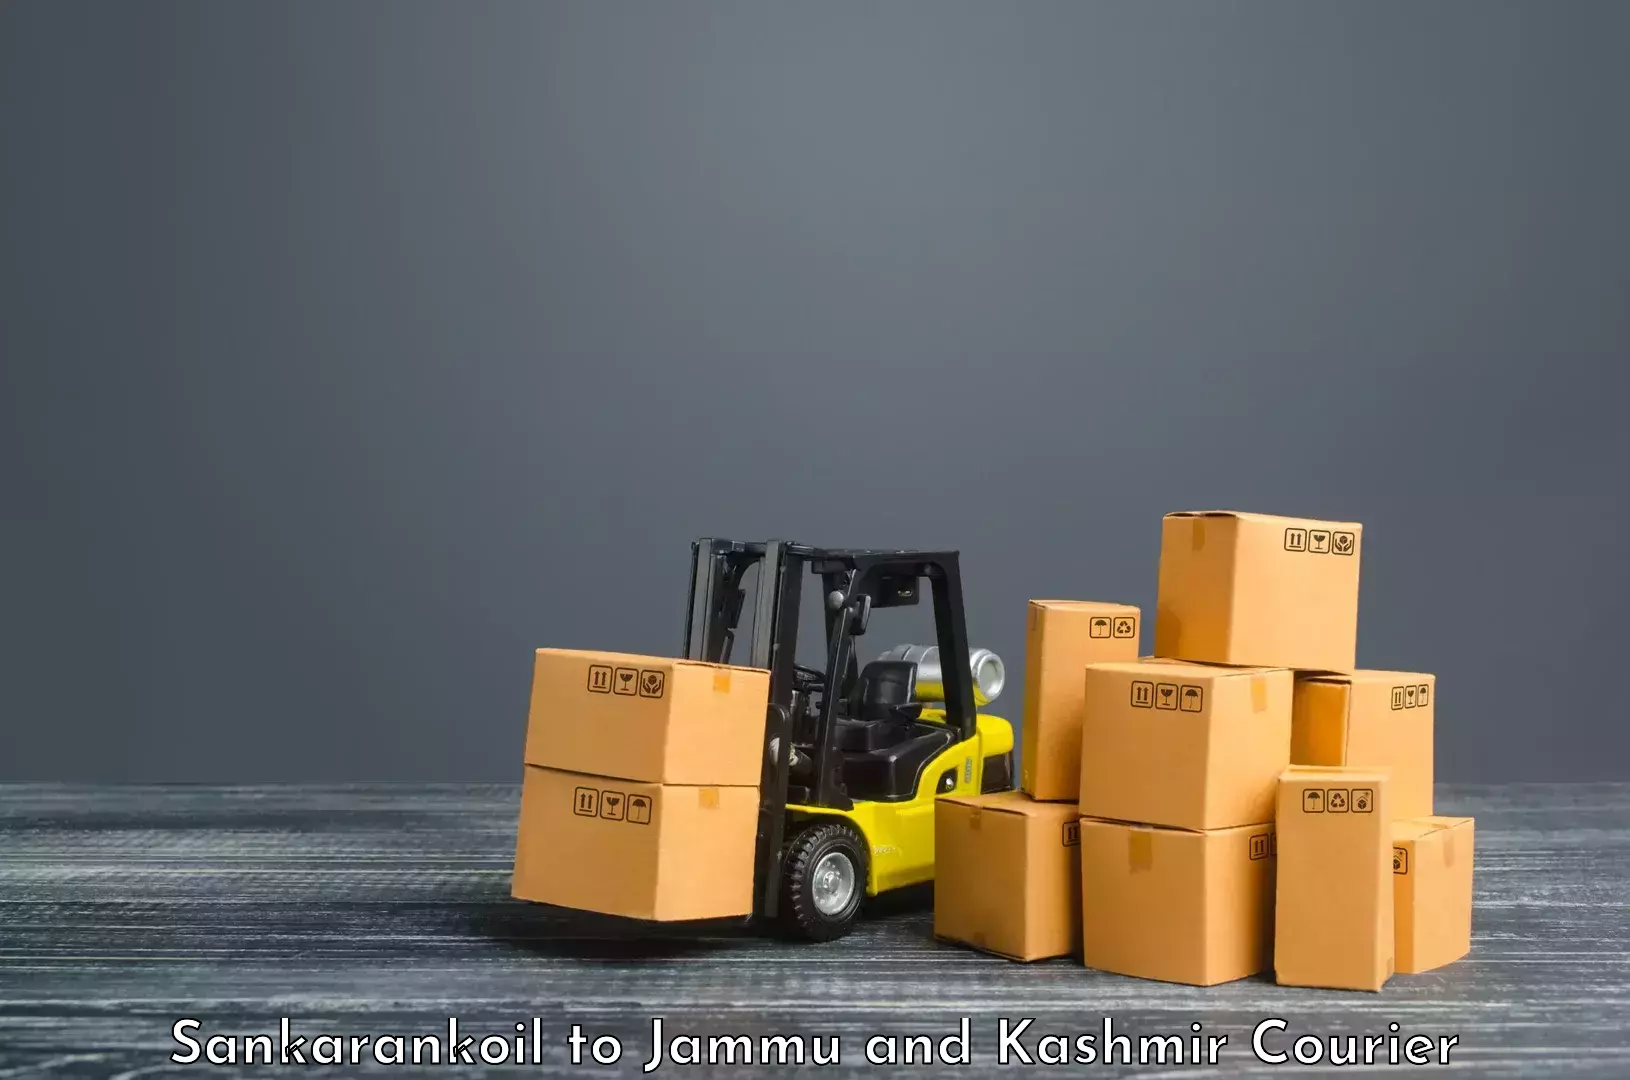 Customer-centric shipping Sankarankoil to Kishtwar